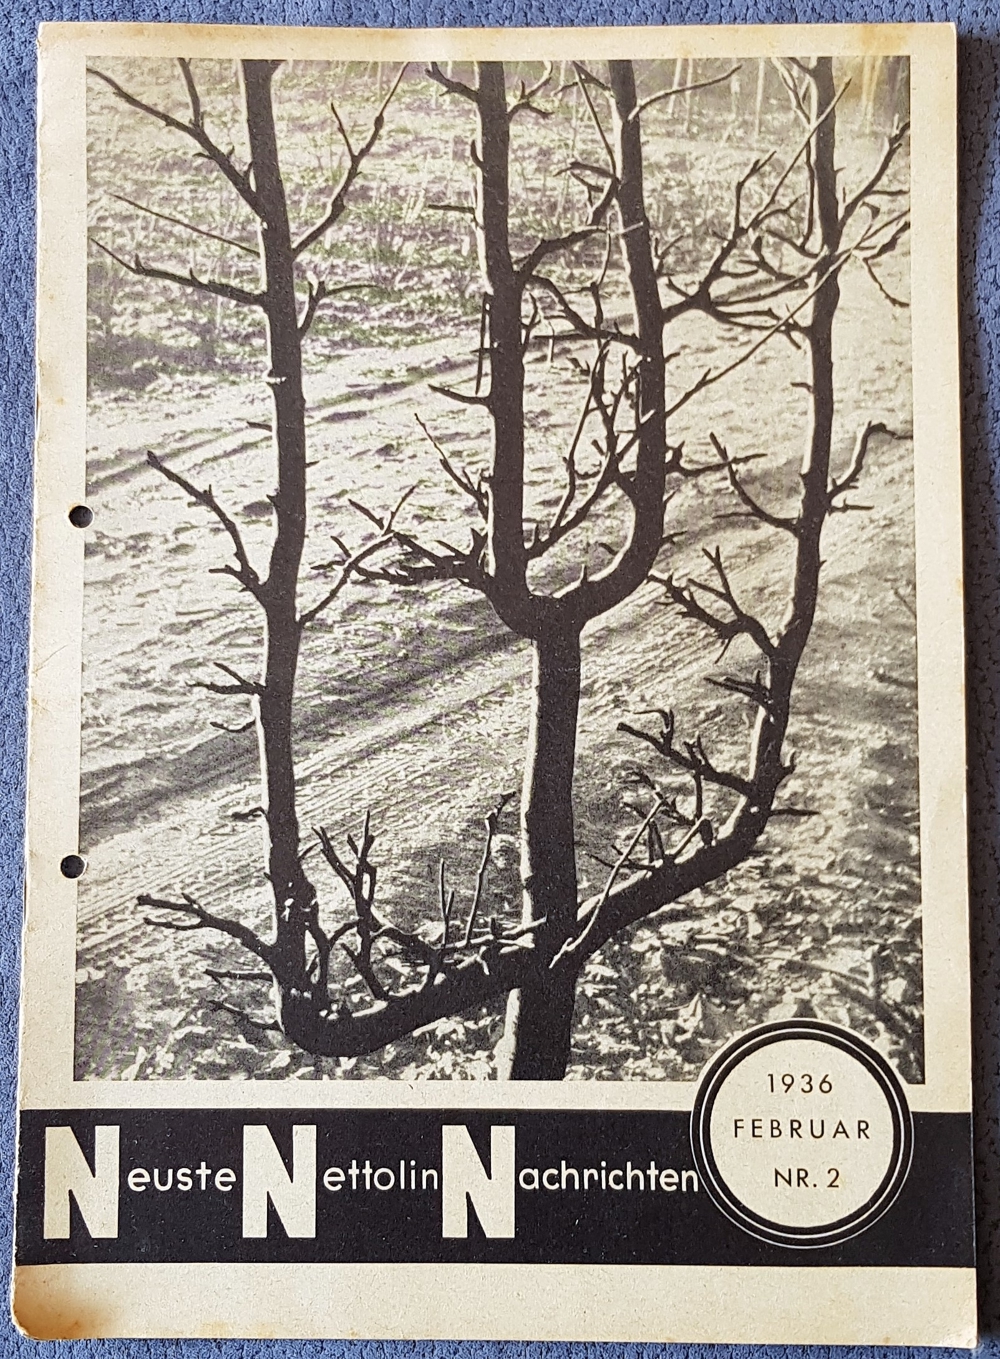 1 Zeitschrift "Neueste Nettoline Nachrichten", Nr: 2, 1936